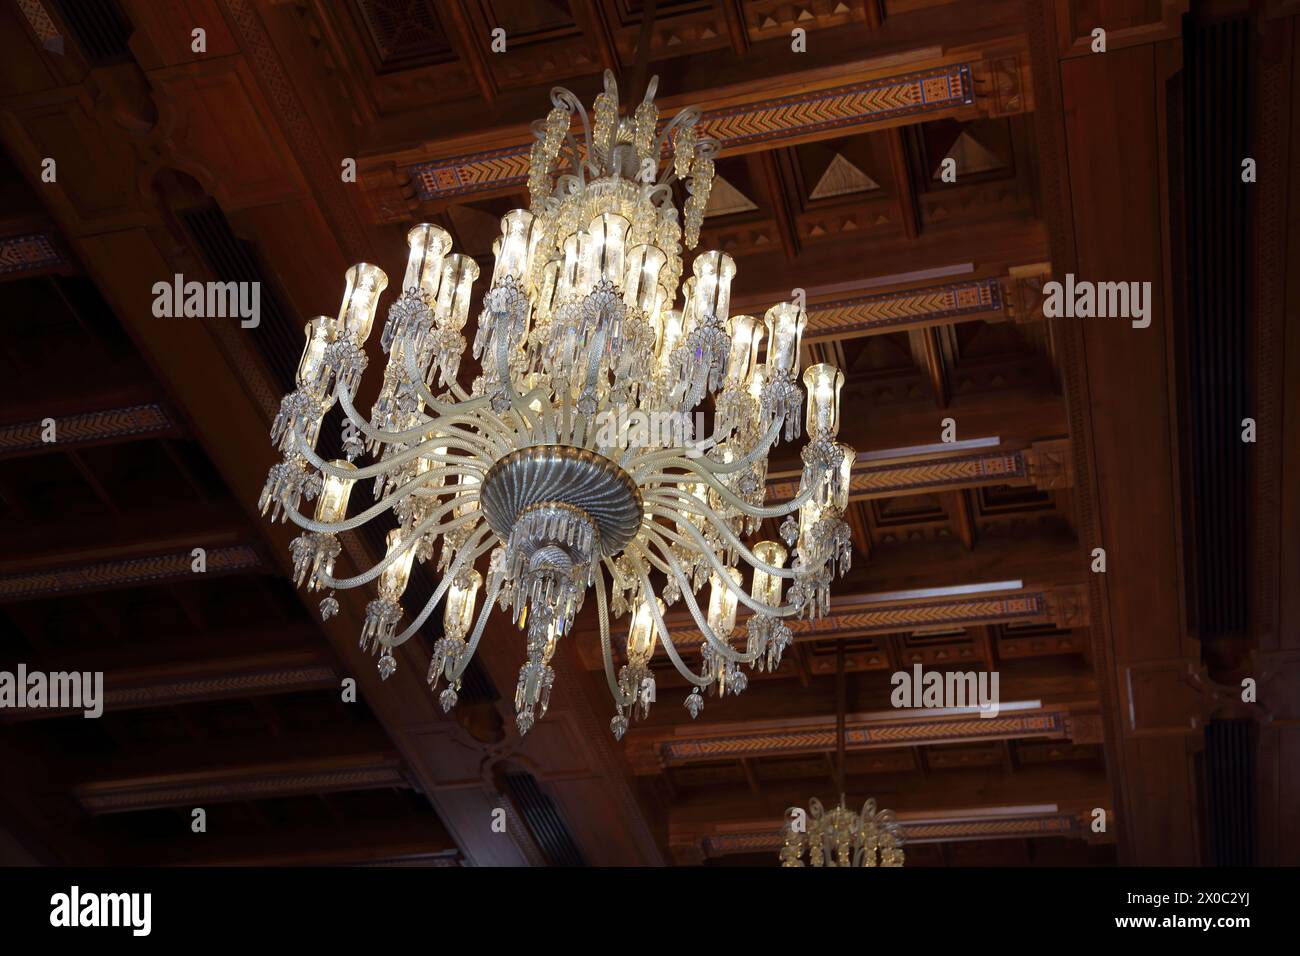 Sultan Qaboos Grand Chandelier en cristal de Mosquée suspendu au plafond omanais en bois dans la salle de prière des femmes Muscat Oman Banque D'Images